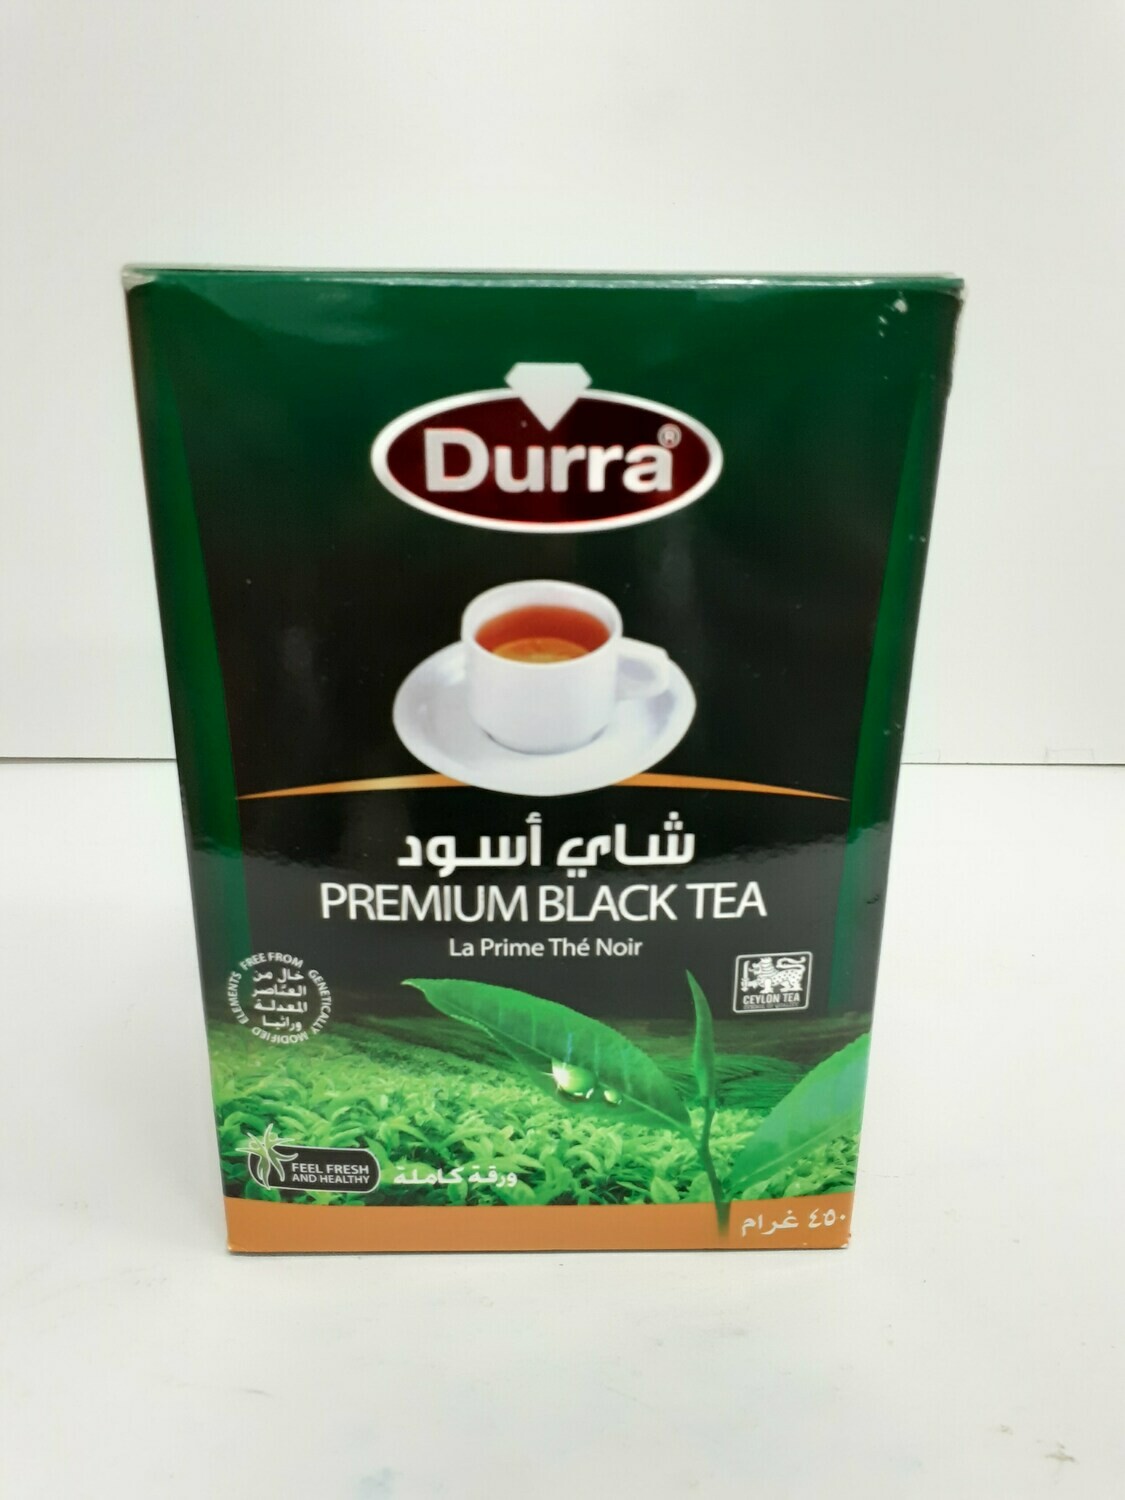 Premium Black Tea DURRA 450 g